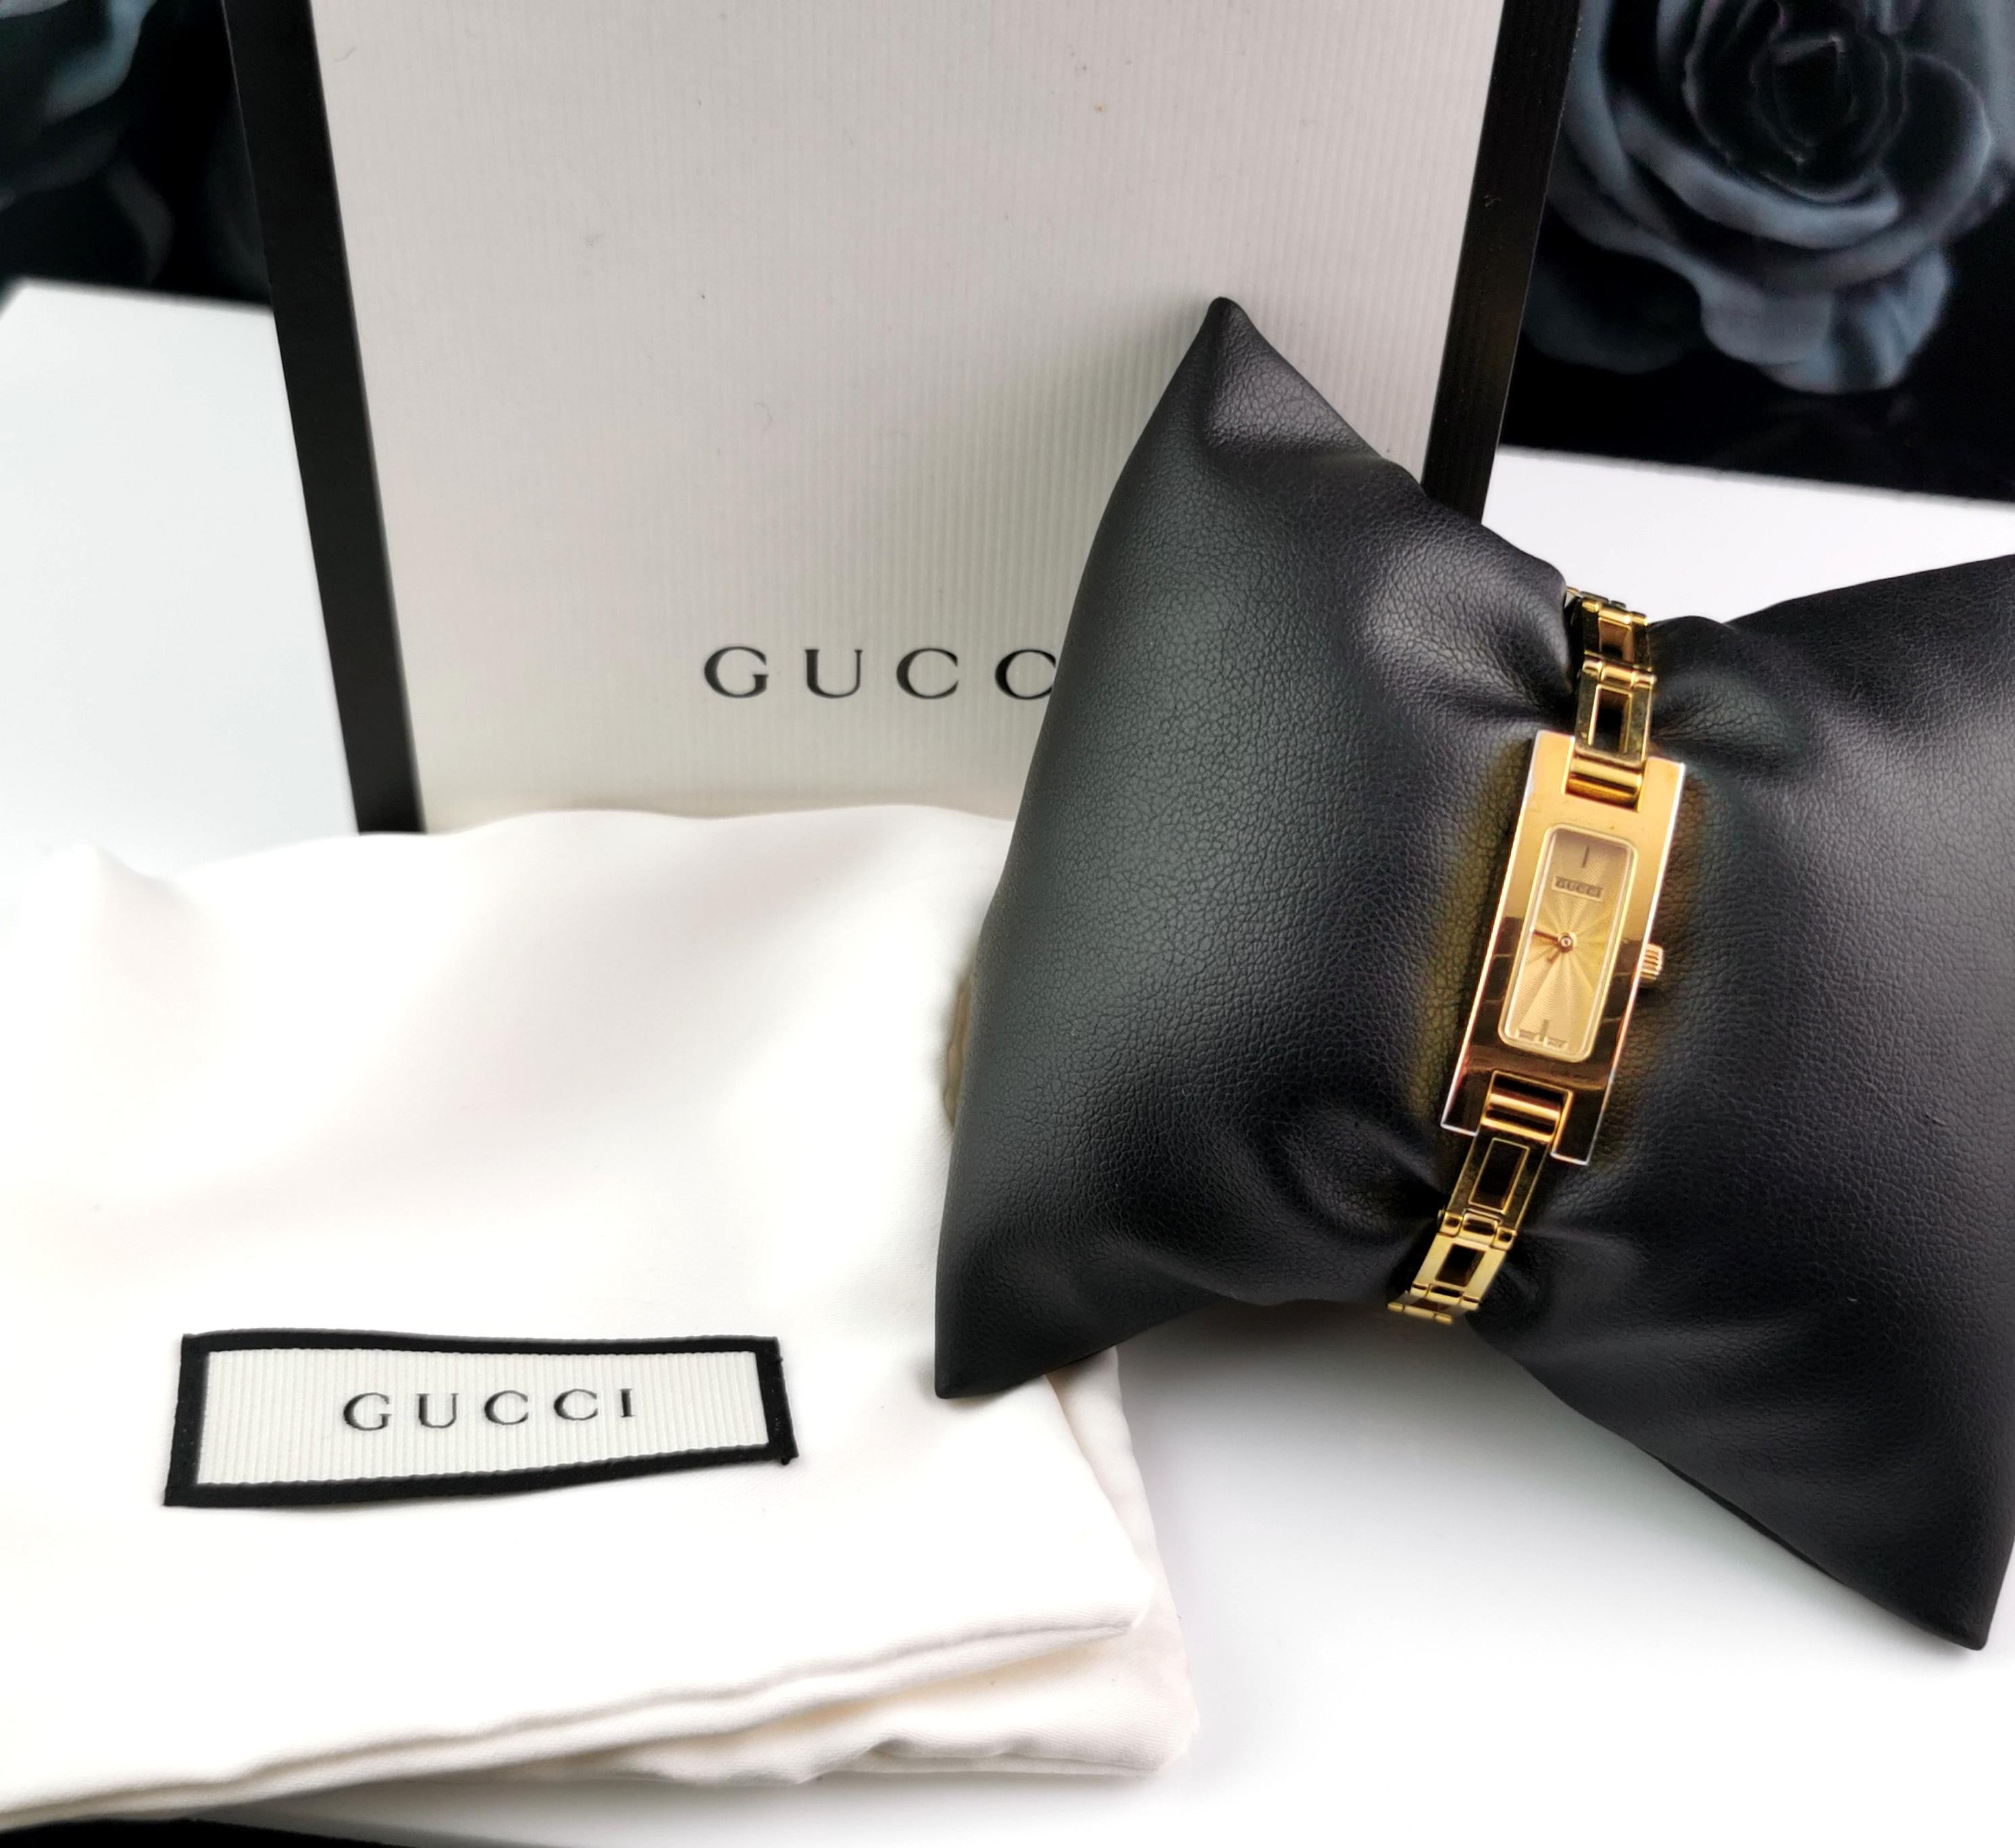 Eine stilvolle Damen Gucci 3900l vergoldet Uhr. 

Dies ist eine Armbanduhr mit einem eleganten rechteckigen Zifferblatt und einem champagnergoldenen Zifferblatt. 

Die meisten sind mit weißem und schwarzem Zifferblatt erhältlich, aber diese hier ist